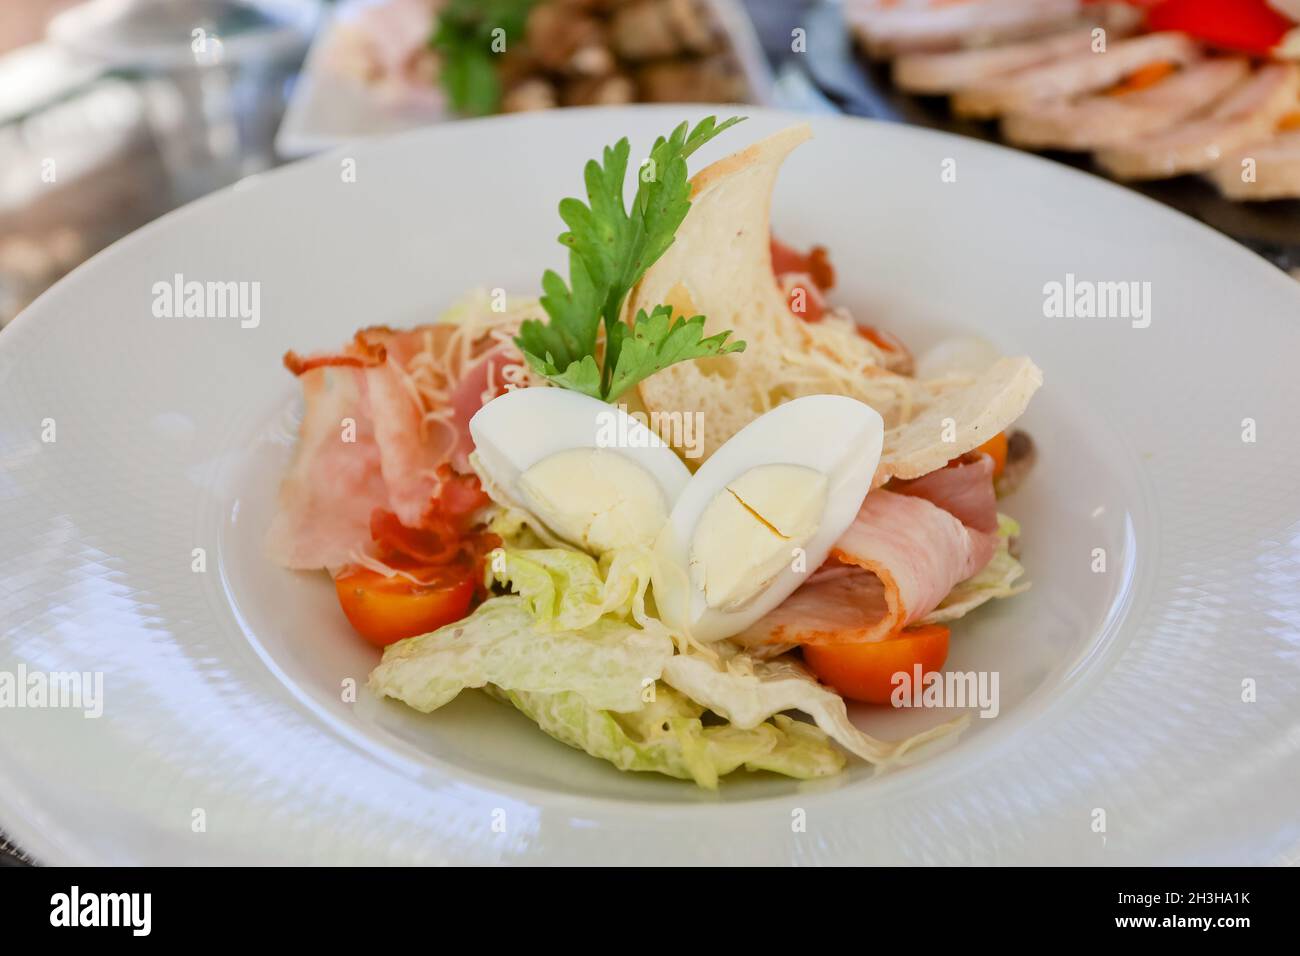 Œufs, croûtons, tomates, salade de jambon dans une assiette blanche sur une table.Photo de haute qualité Banque D'Images